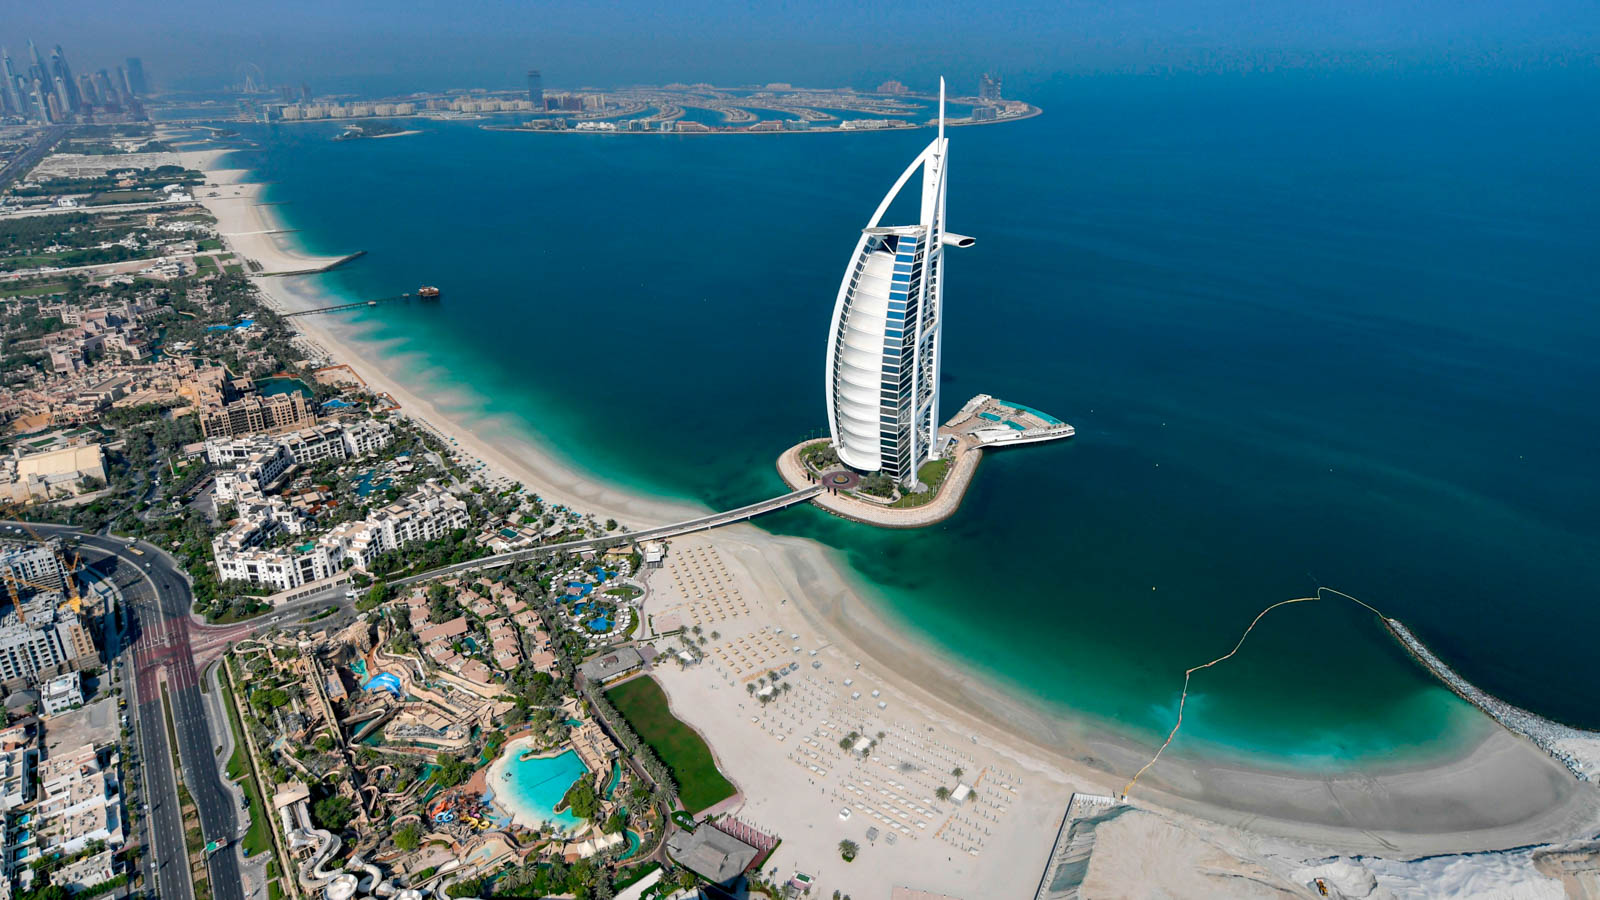 Tour Du lịch Dubai – Abu Dhabi 4 ngày 4 đêm từ HCM